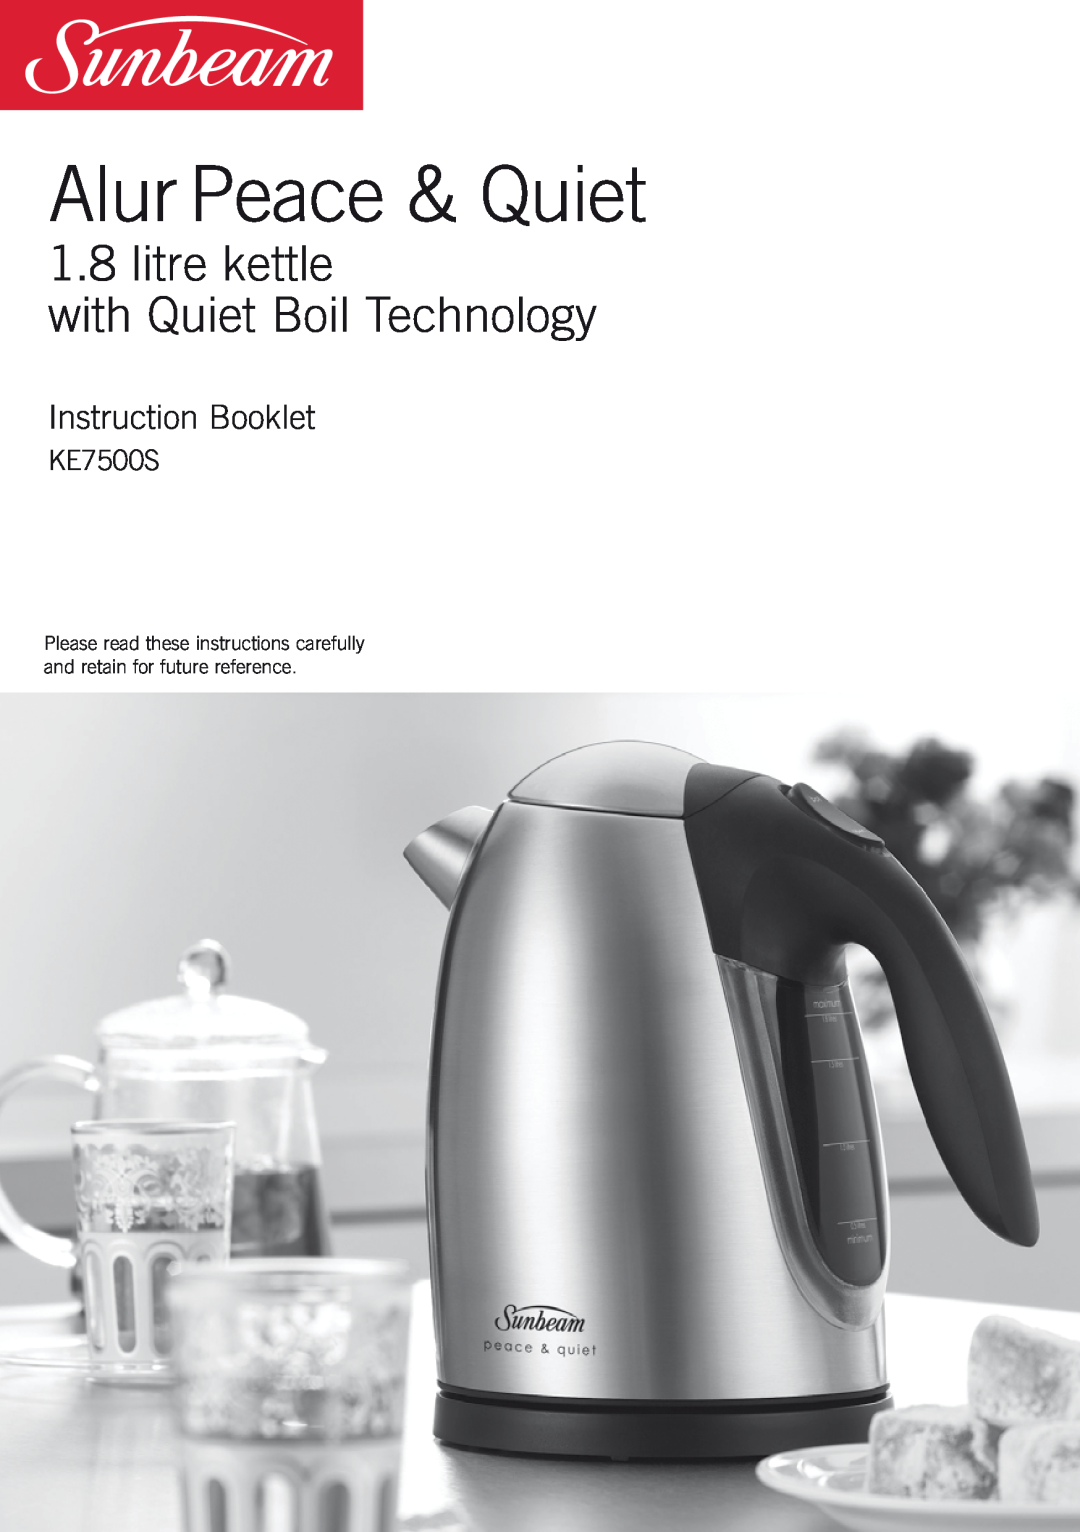 Sunbeam KE7500S manual Alur Peace & Quiet, litre kettle with Quiet Boil Technology, Instruction Booklet 